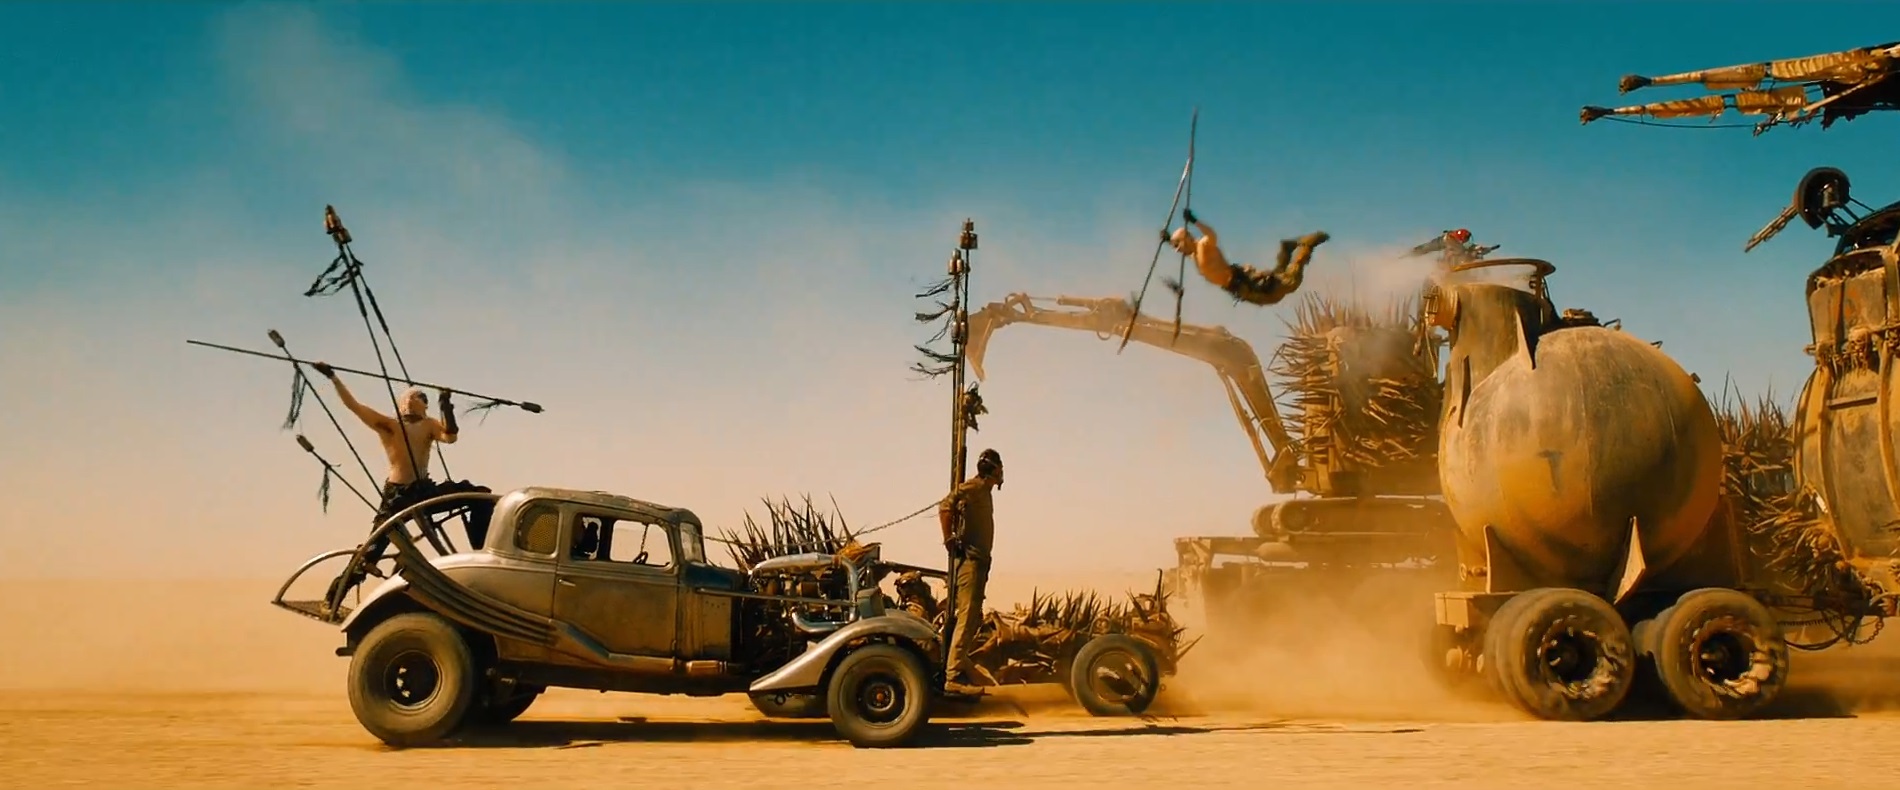 Mad Max: Fury Road. stunt double: Slit